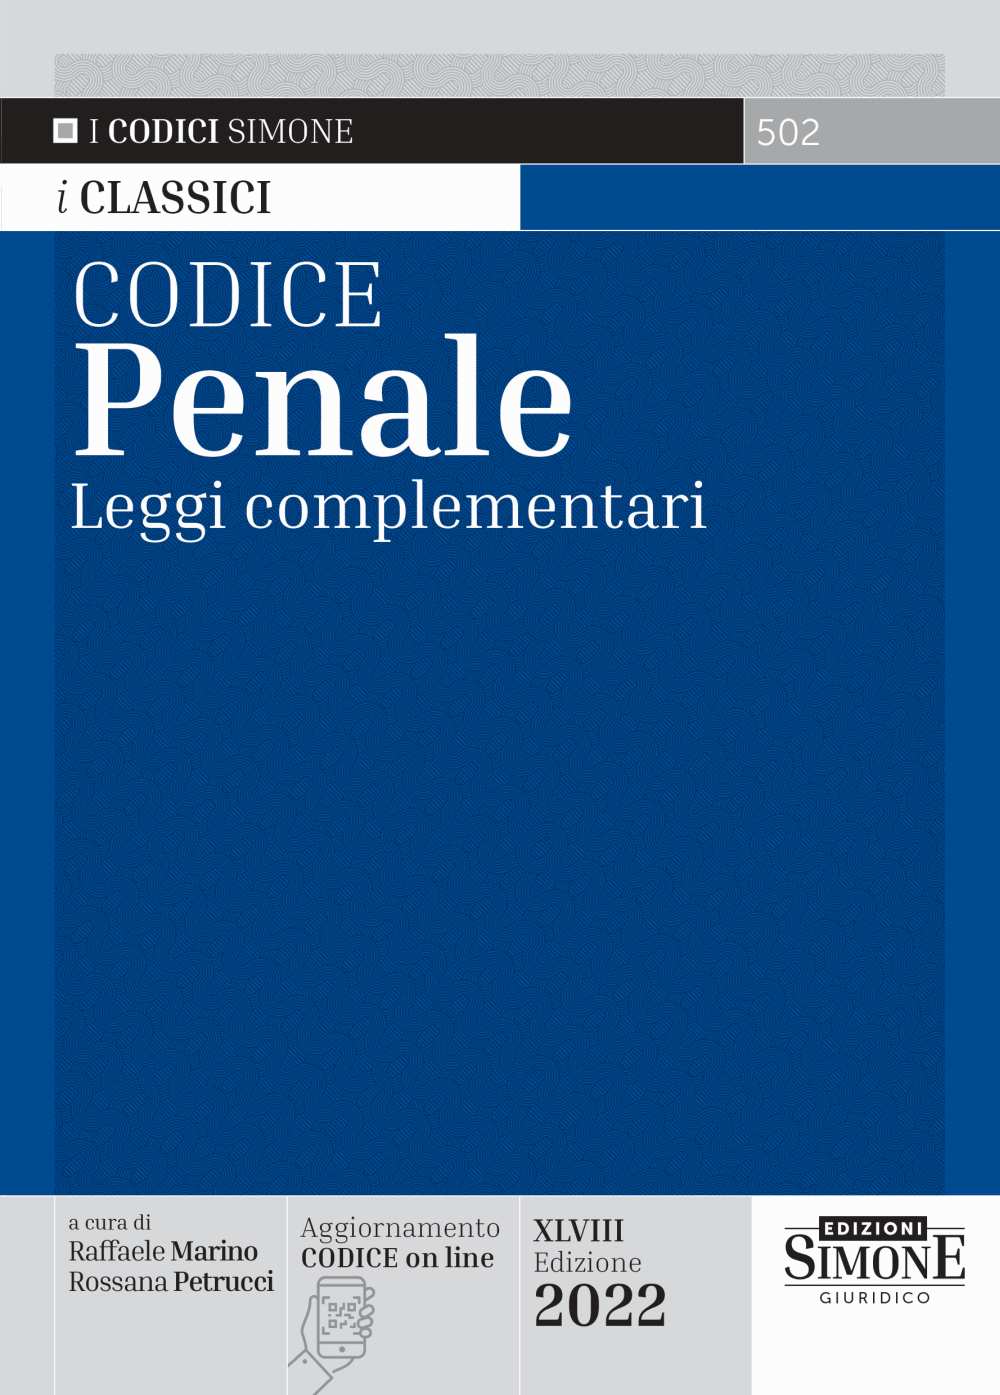 Codice Penale 2022